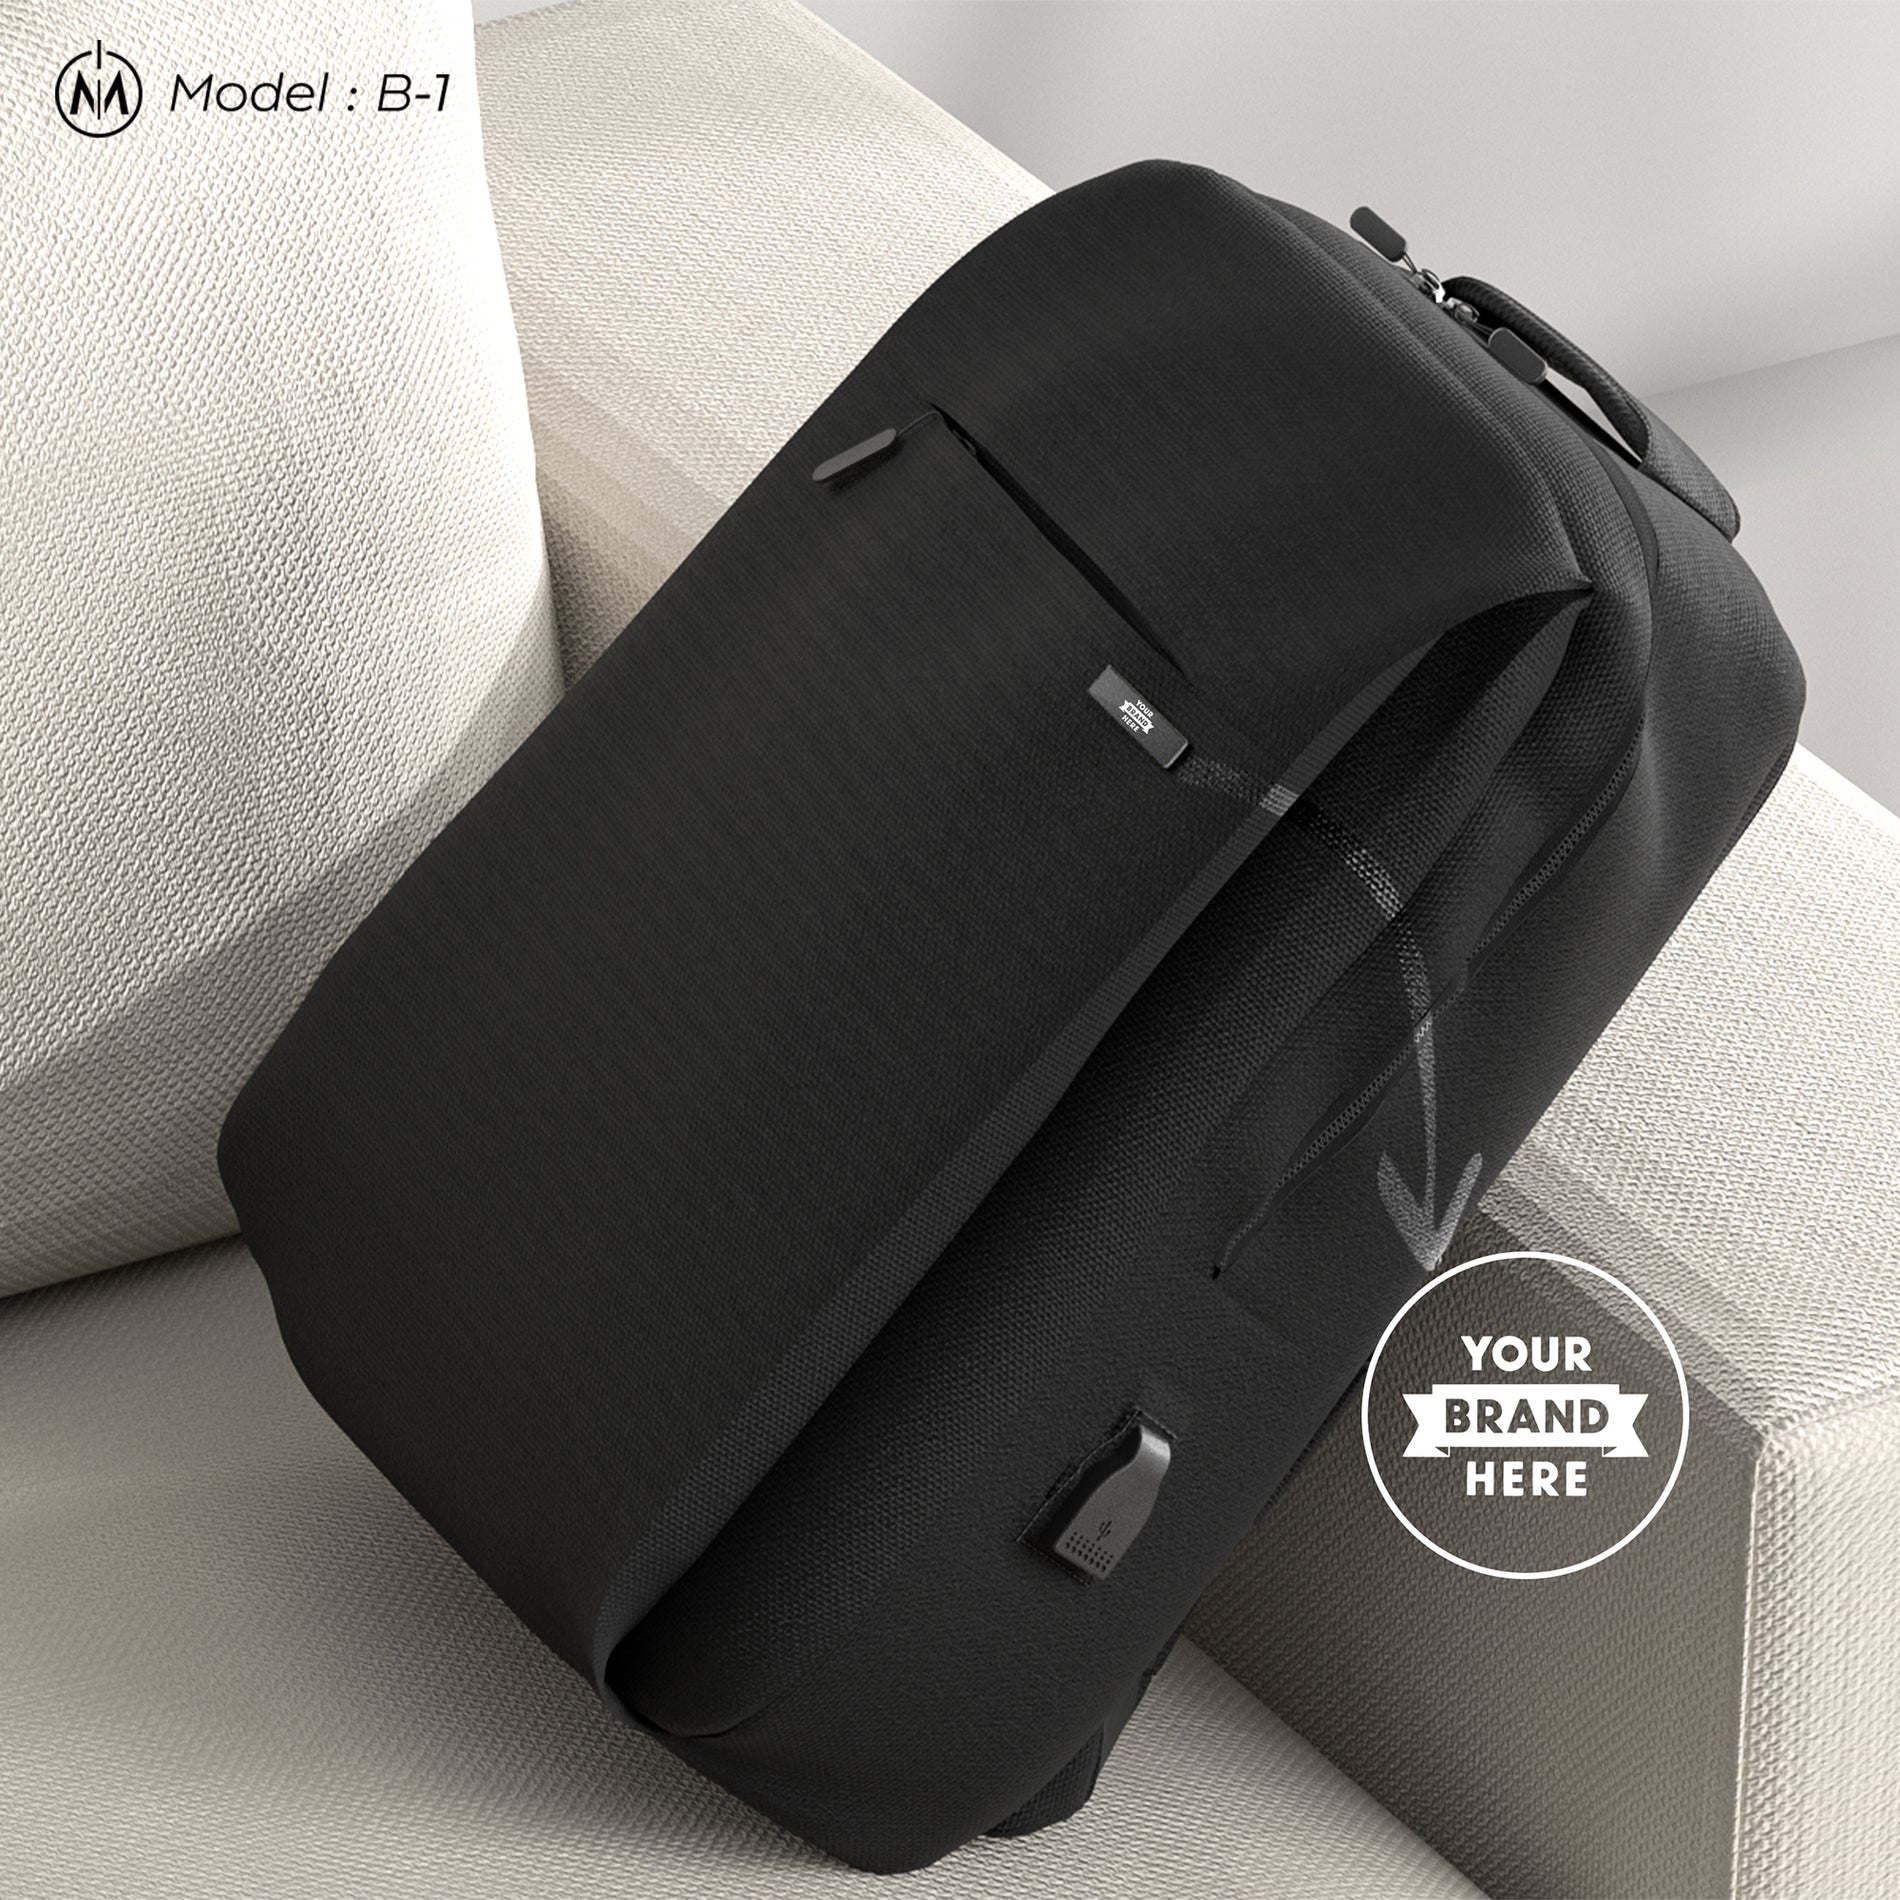 Corporate - Firmen- Gift - Geschenk  Backpack - Rucksack  Set - Set  BX-4 - BX-4